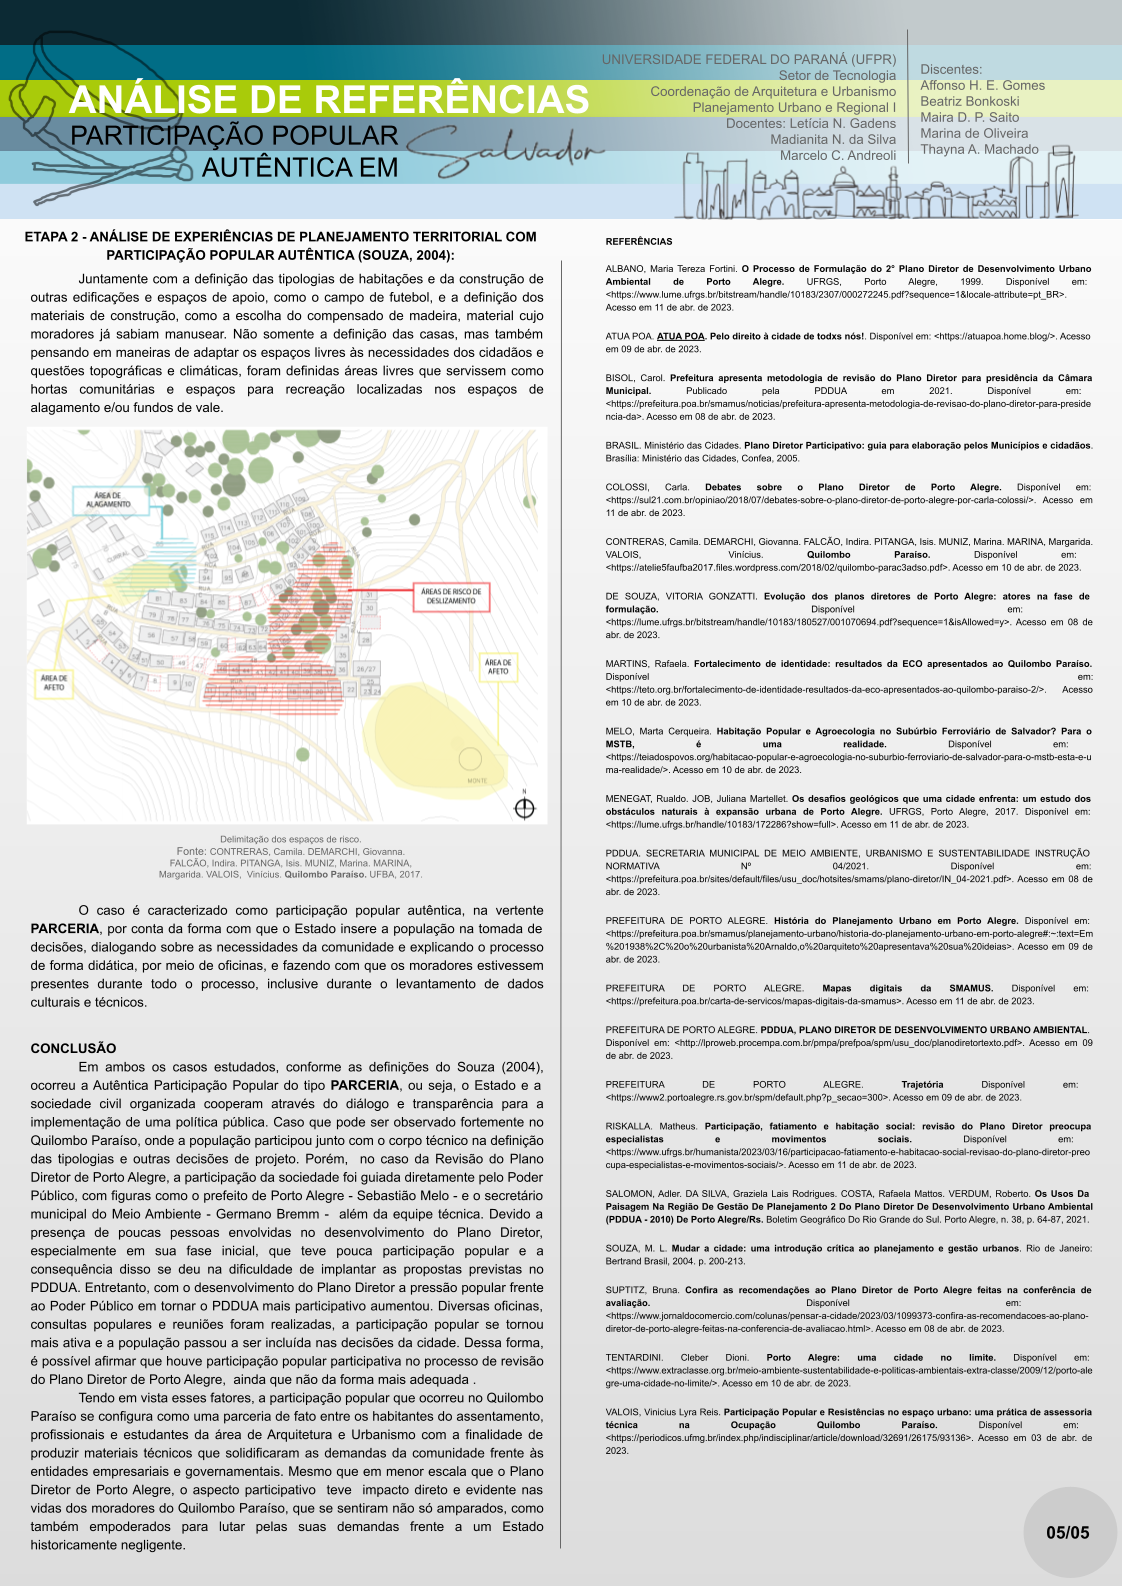 urbanismo planejamento urbano projeto urban planning salvador ufpr Participação Popular Plano Diretor porto alegre